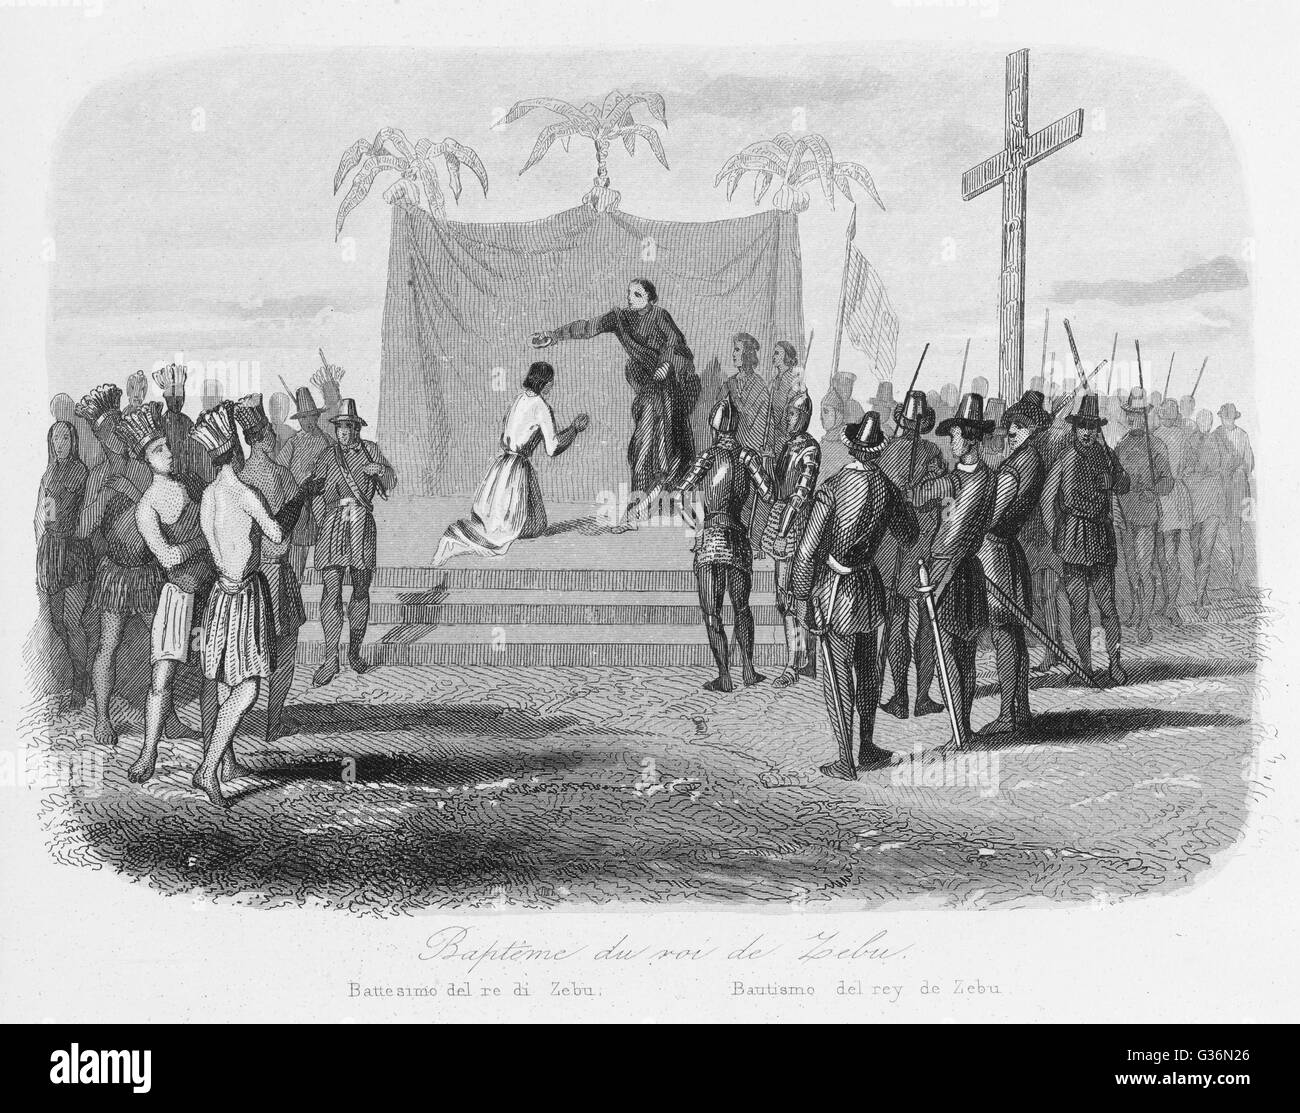 Humabon, König von Cebu auf den Philippinen wird getauft, wenn Magelhaes (Magellan) seine Insel besucht.      Datum: 14 April 1521 Stockfoto